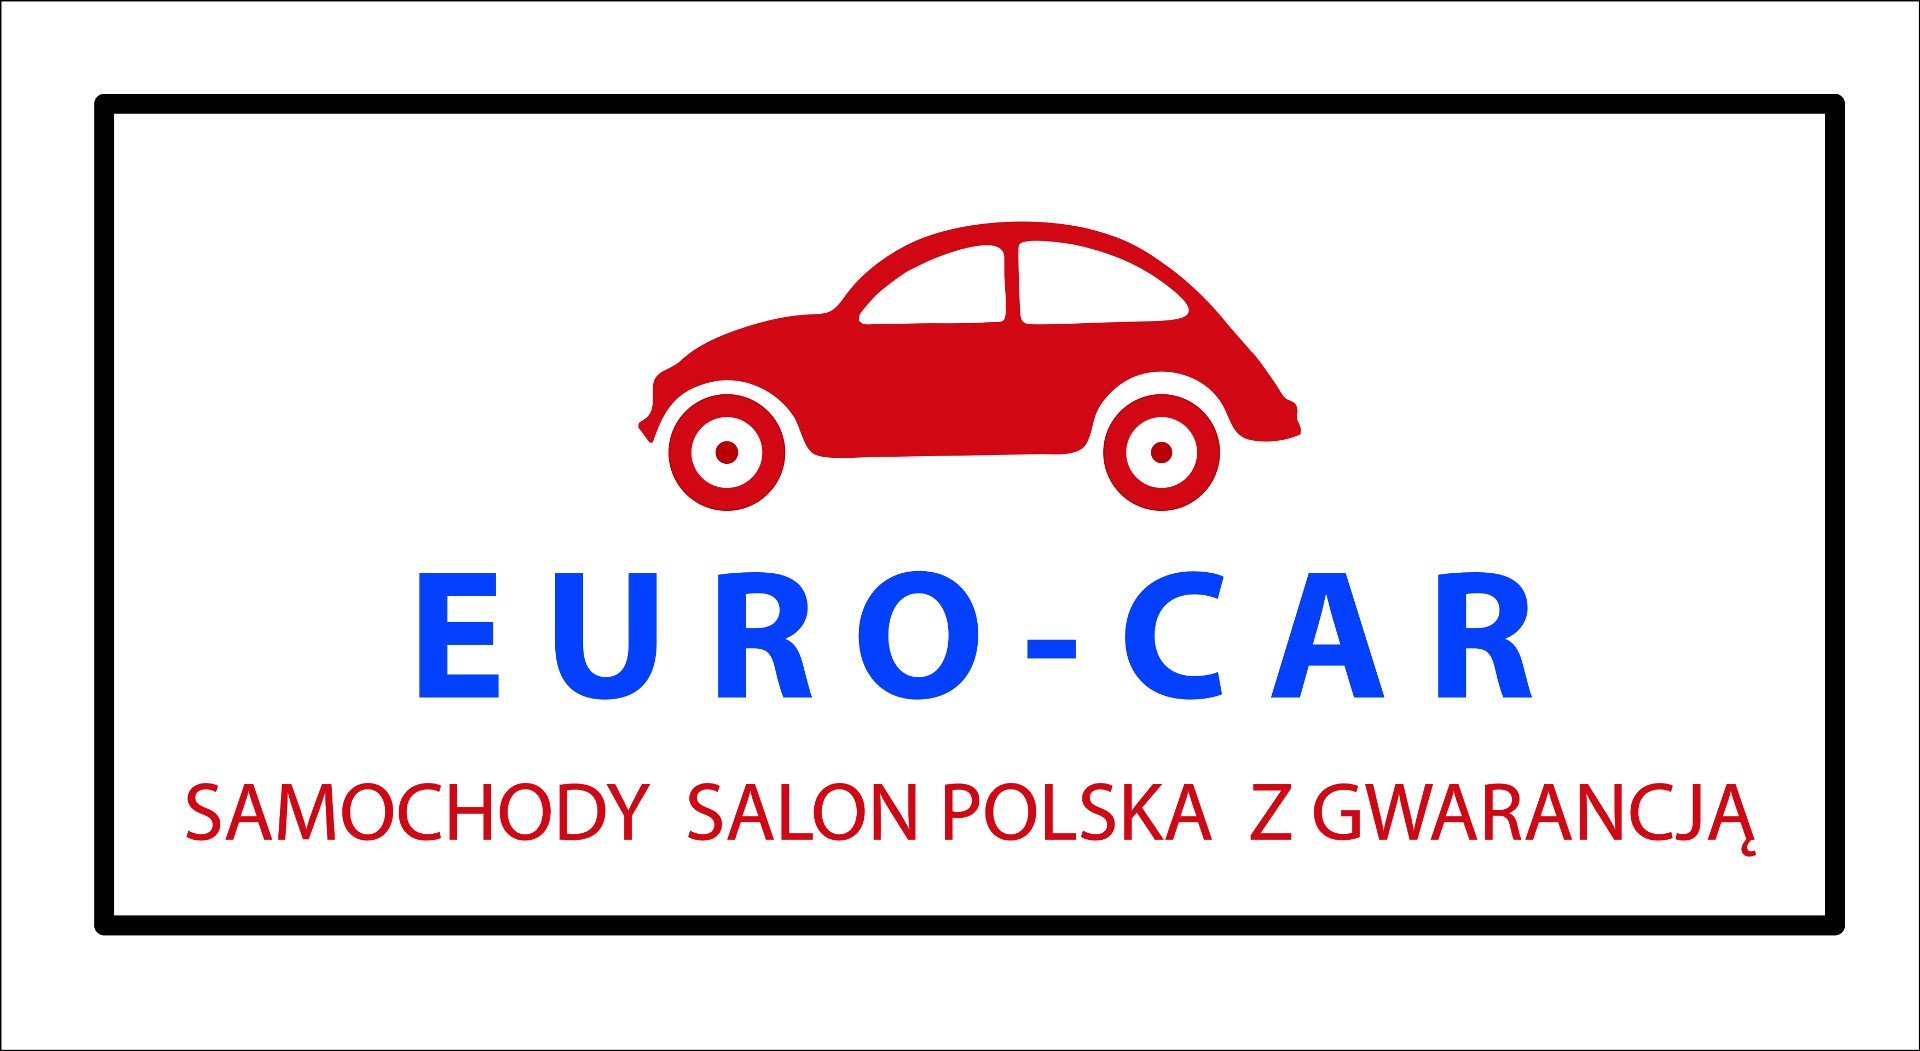 EURO-CAR SAMOCHODY Z GWARANCJĄ